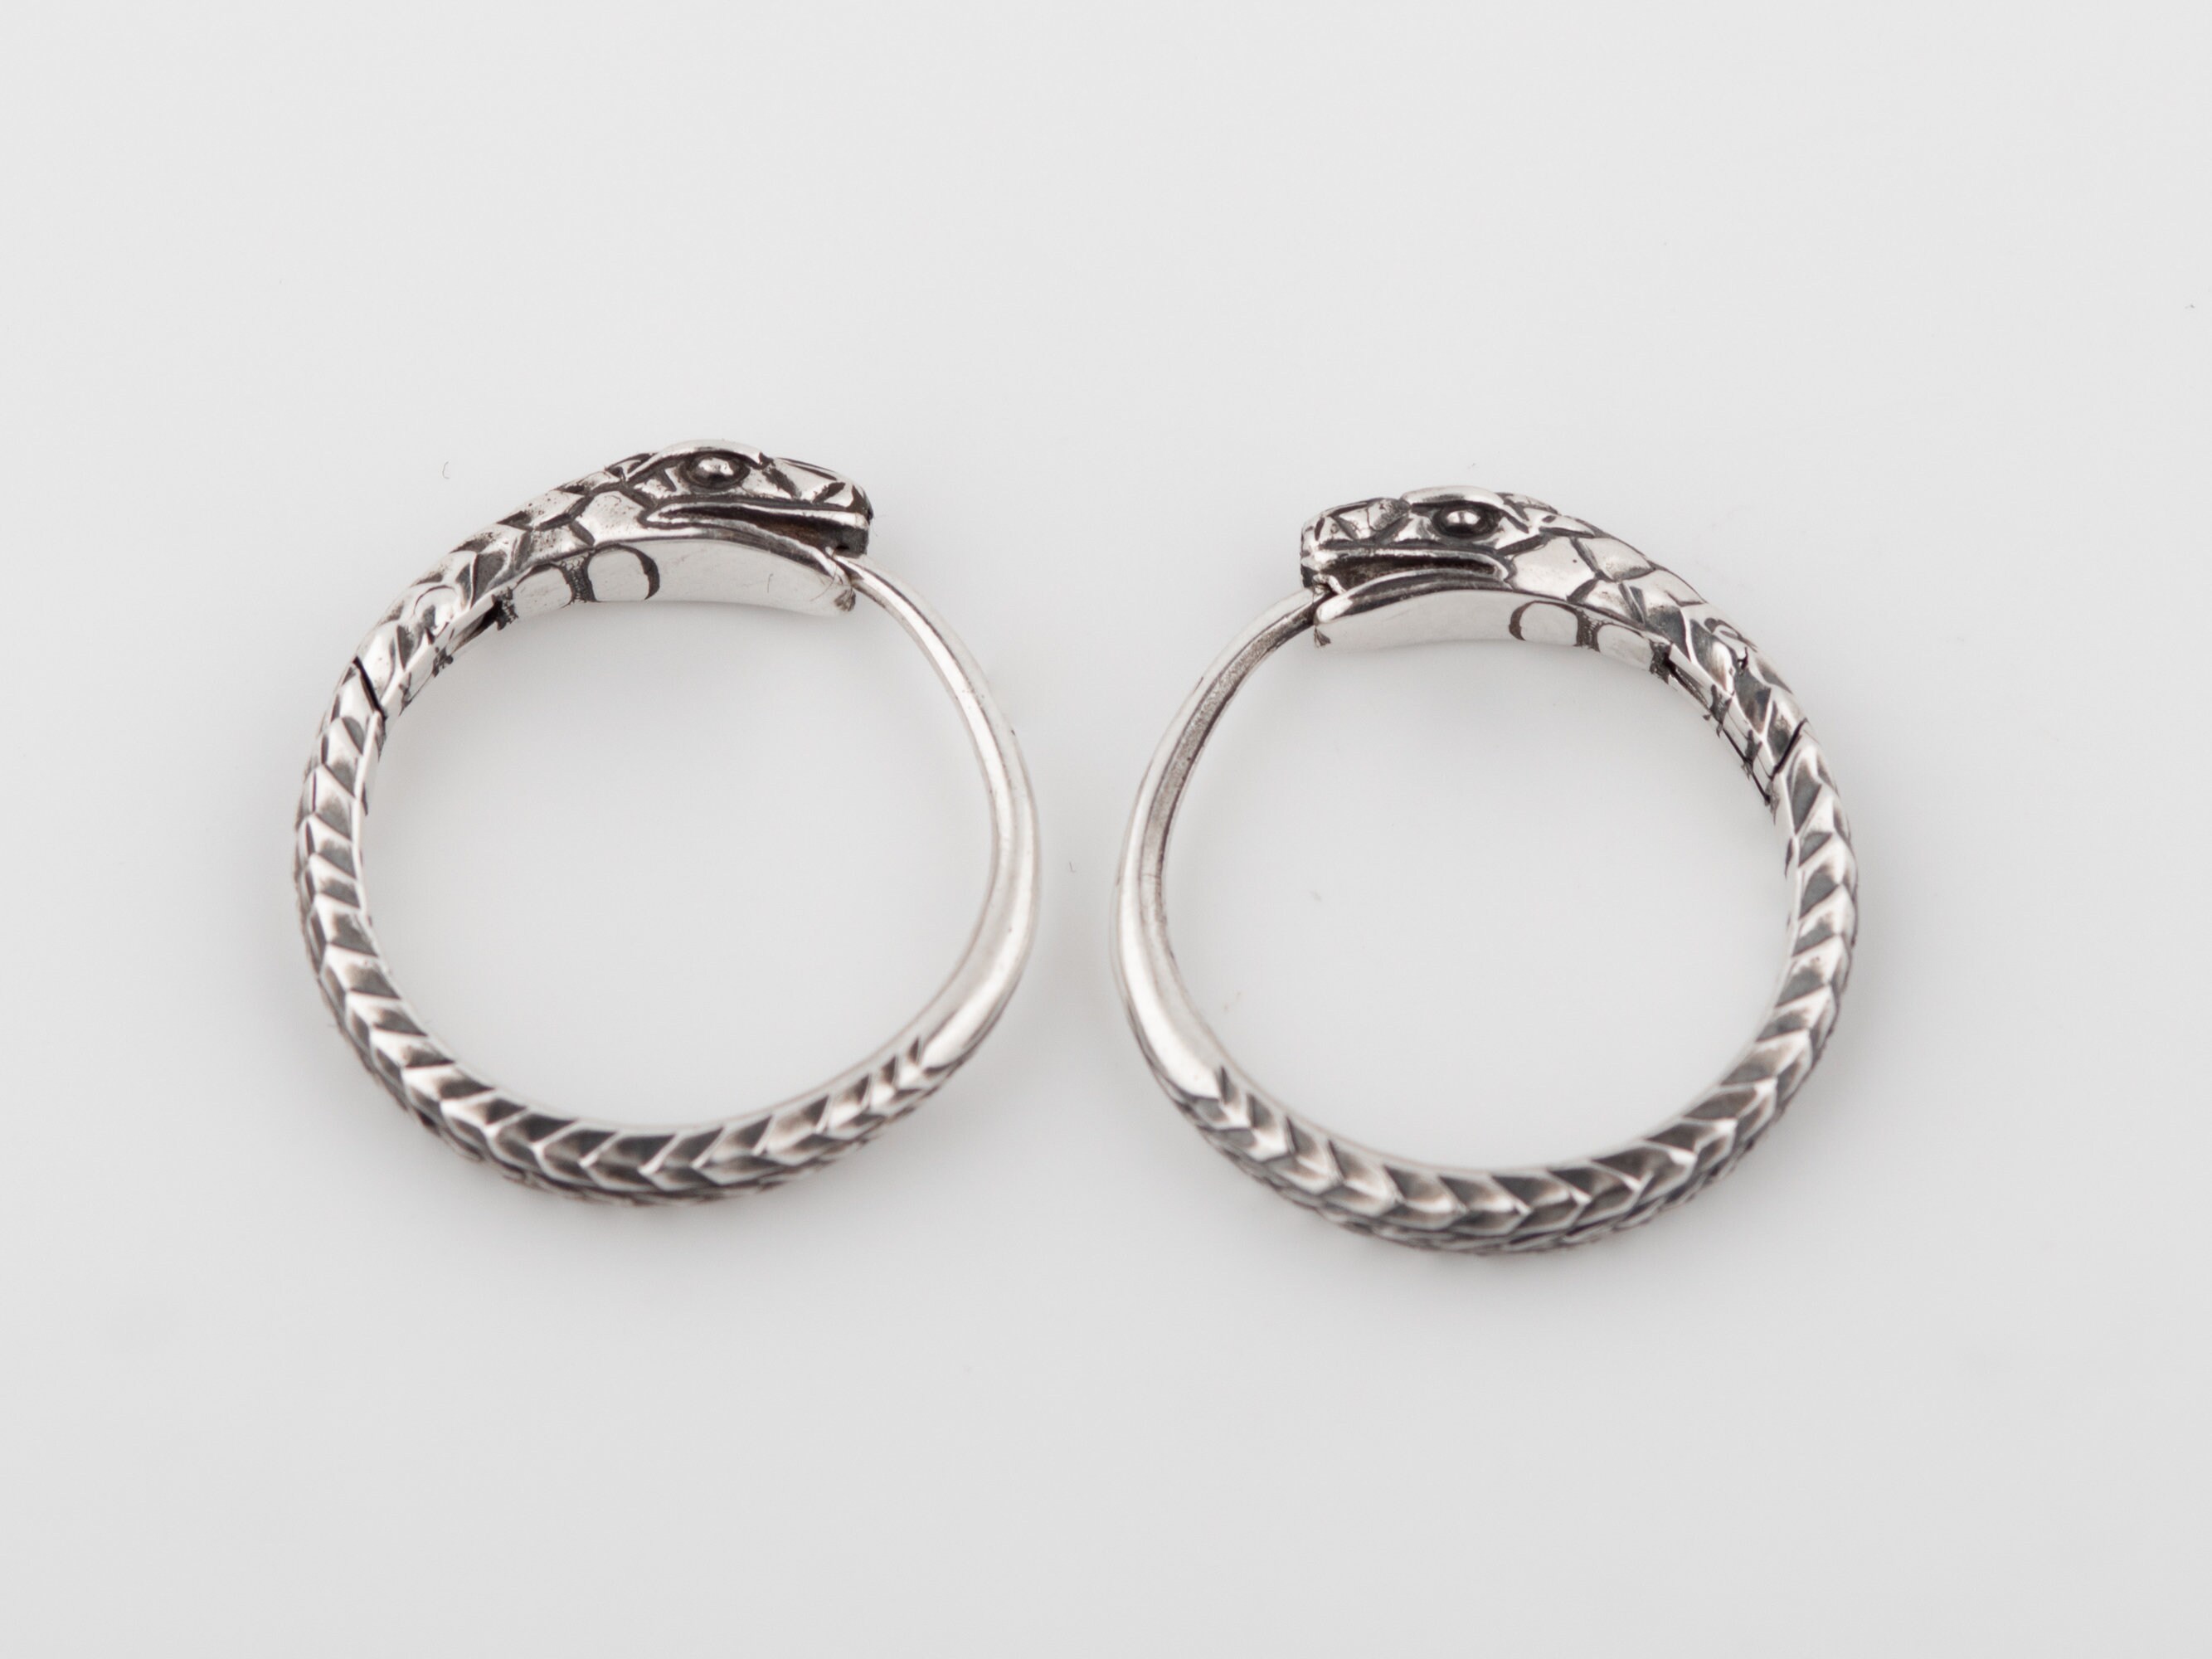 Snake earrings Ouroboros trendy hoop earrings sterling silver | Etsy